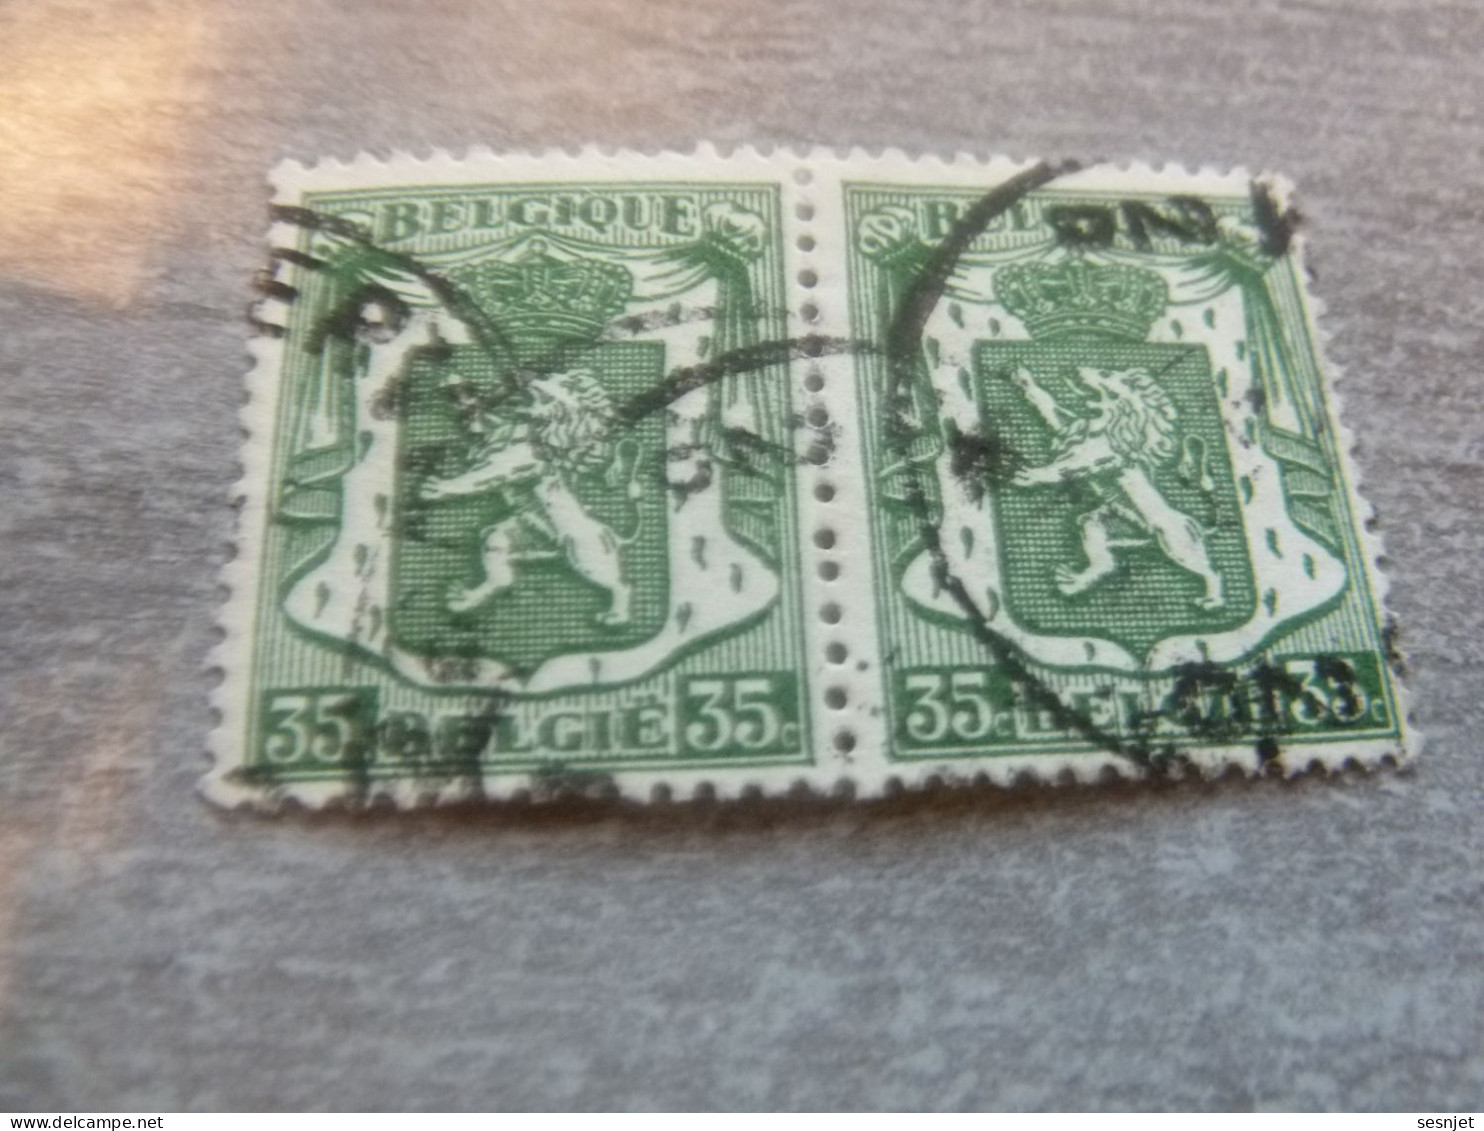 Belgique - Armoirie - Lion - 35c. - Vert - Double Oblitérés - Année 1936 - - Usati